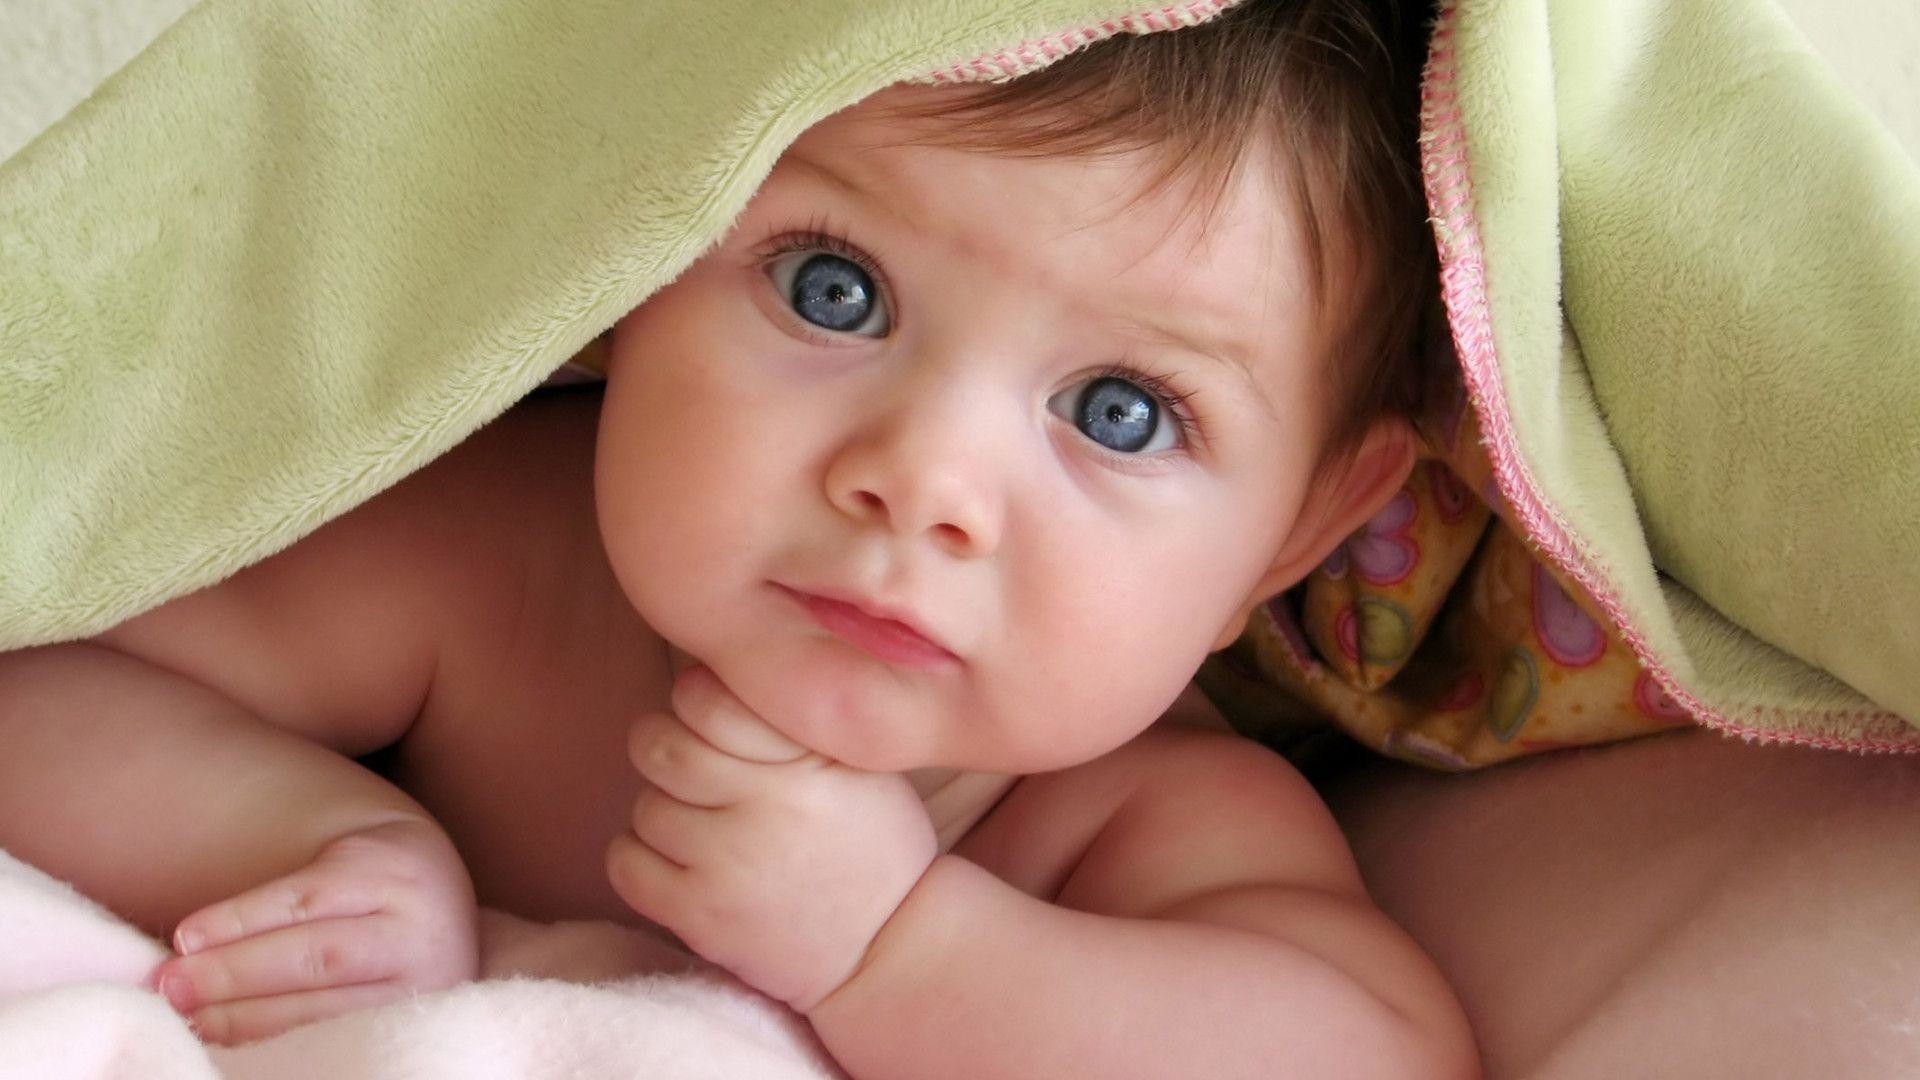 1920x1080 Baby Desktop Wallpaper: Cute Baby Desktop Wallpaper #4930 |.Ssofc